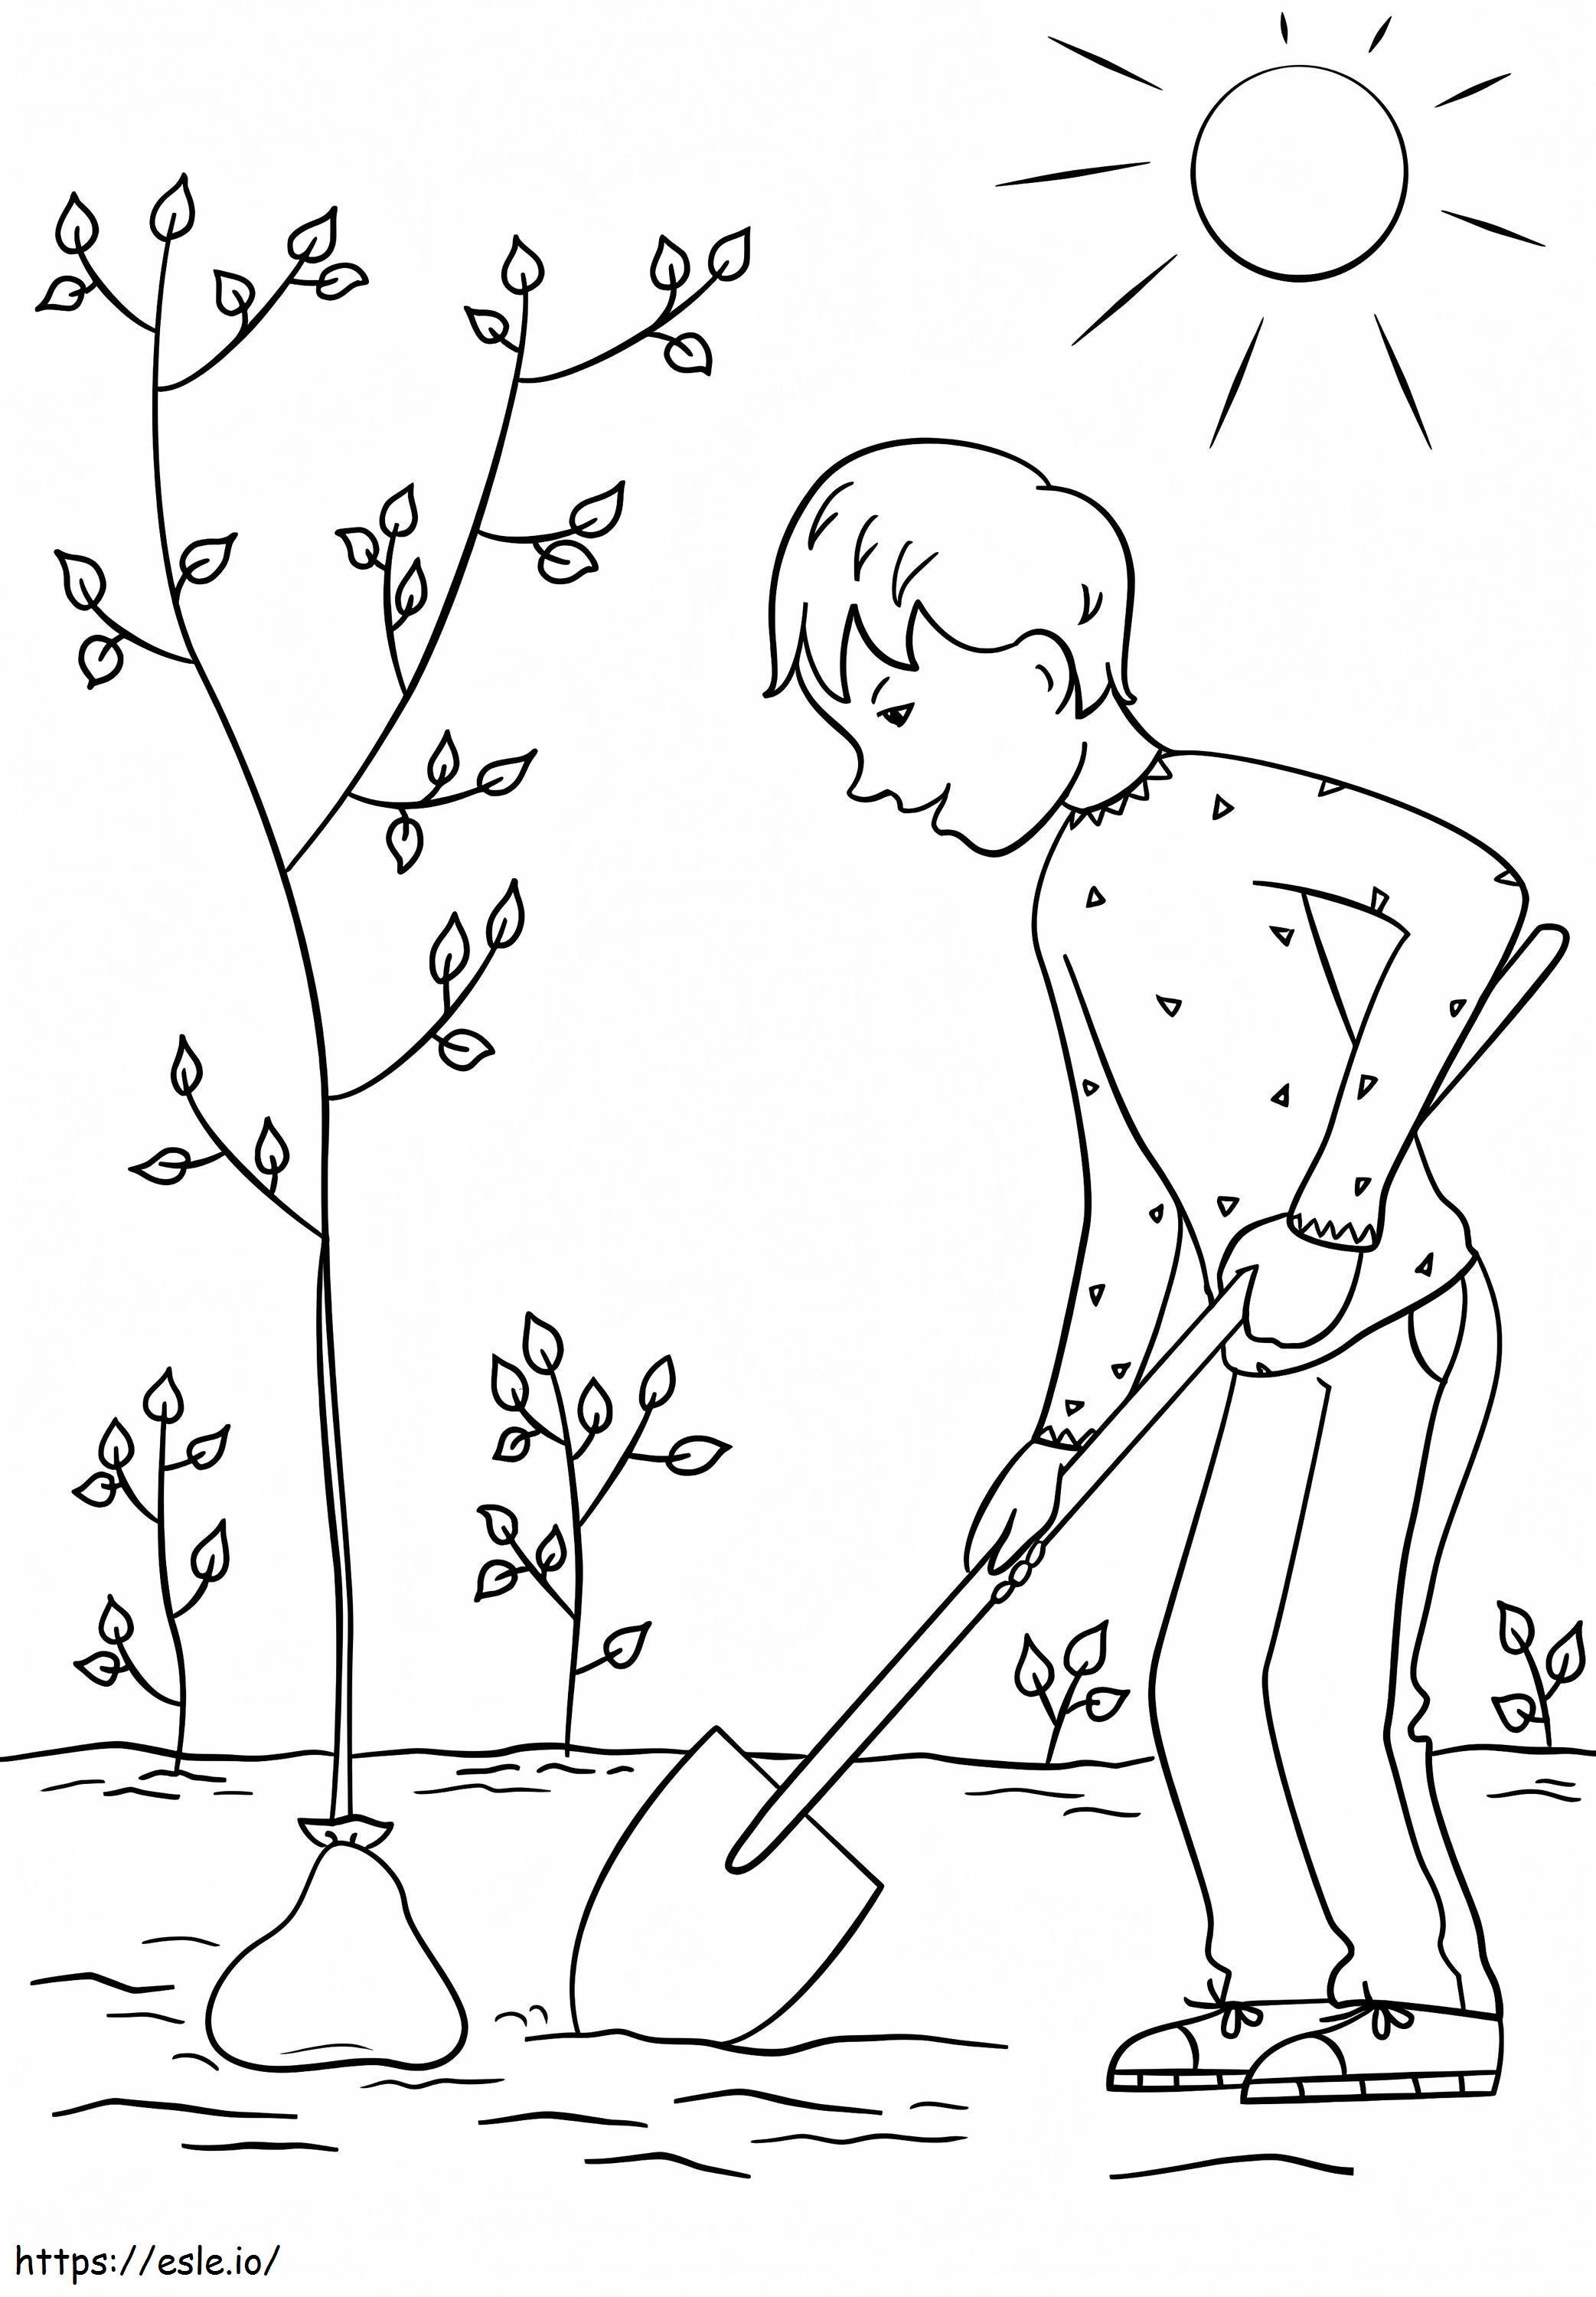 Junge pflanzt einen Baum 1 ausmalbilder